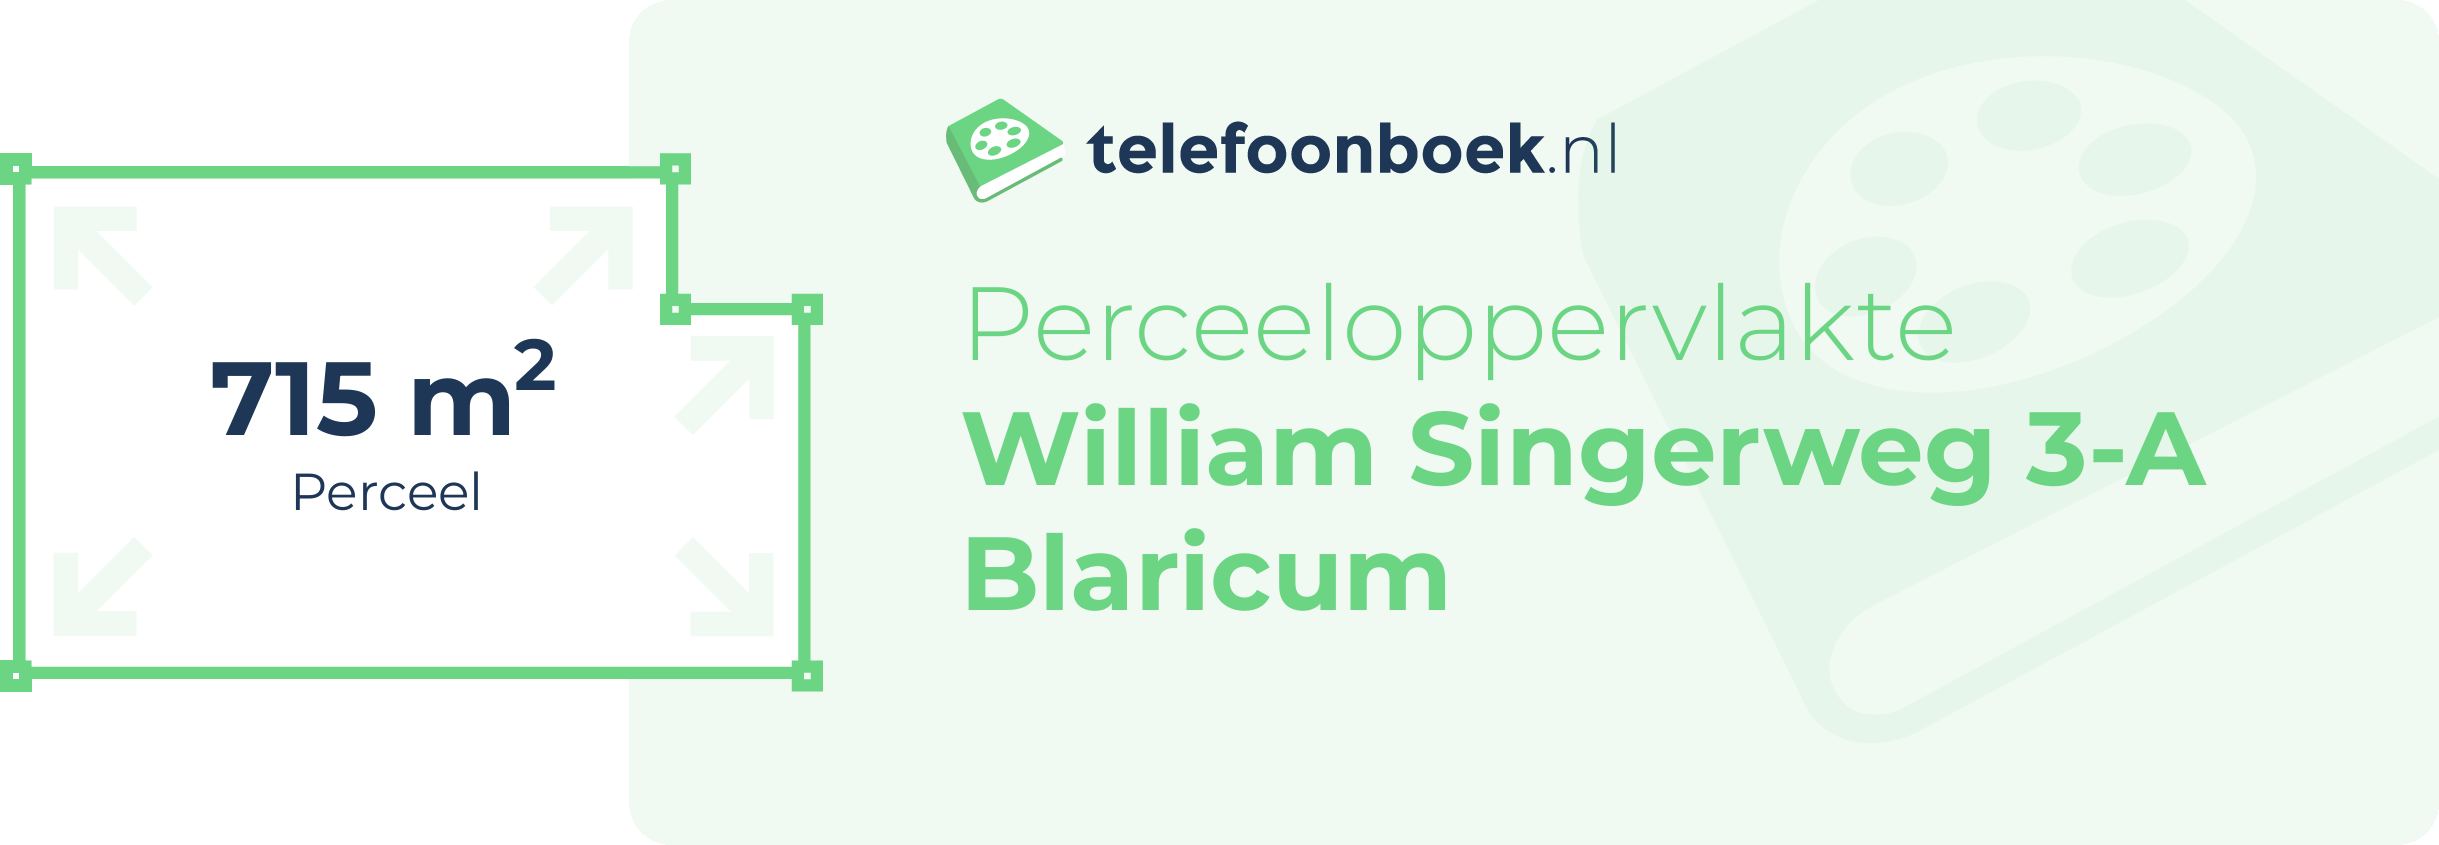 Perceeloppervlakte William Singerweg 3-A Blaricum